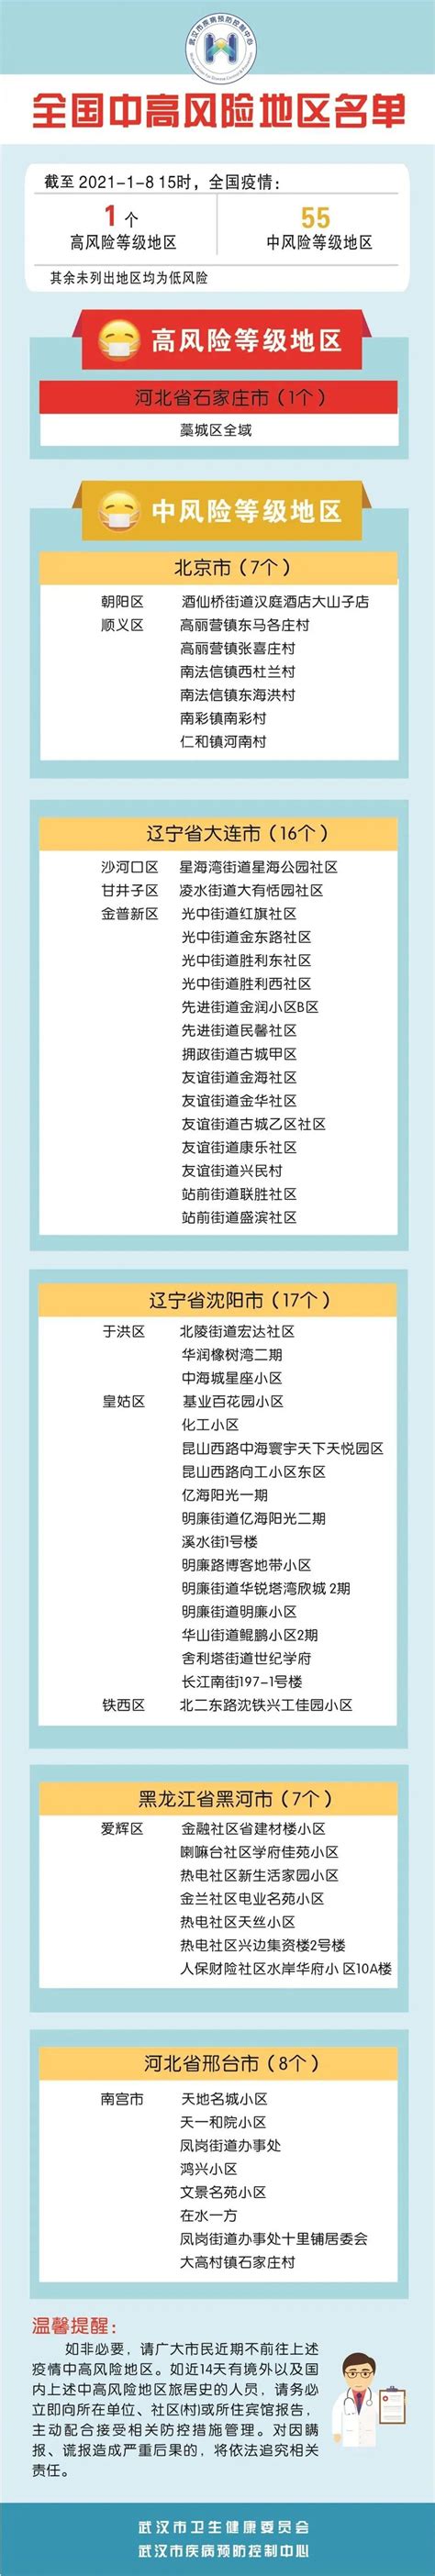 全国中高风险地区最新名单_天下_新闻中心_长江网_cjn.cn